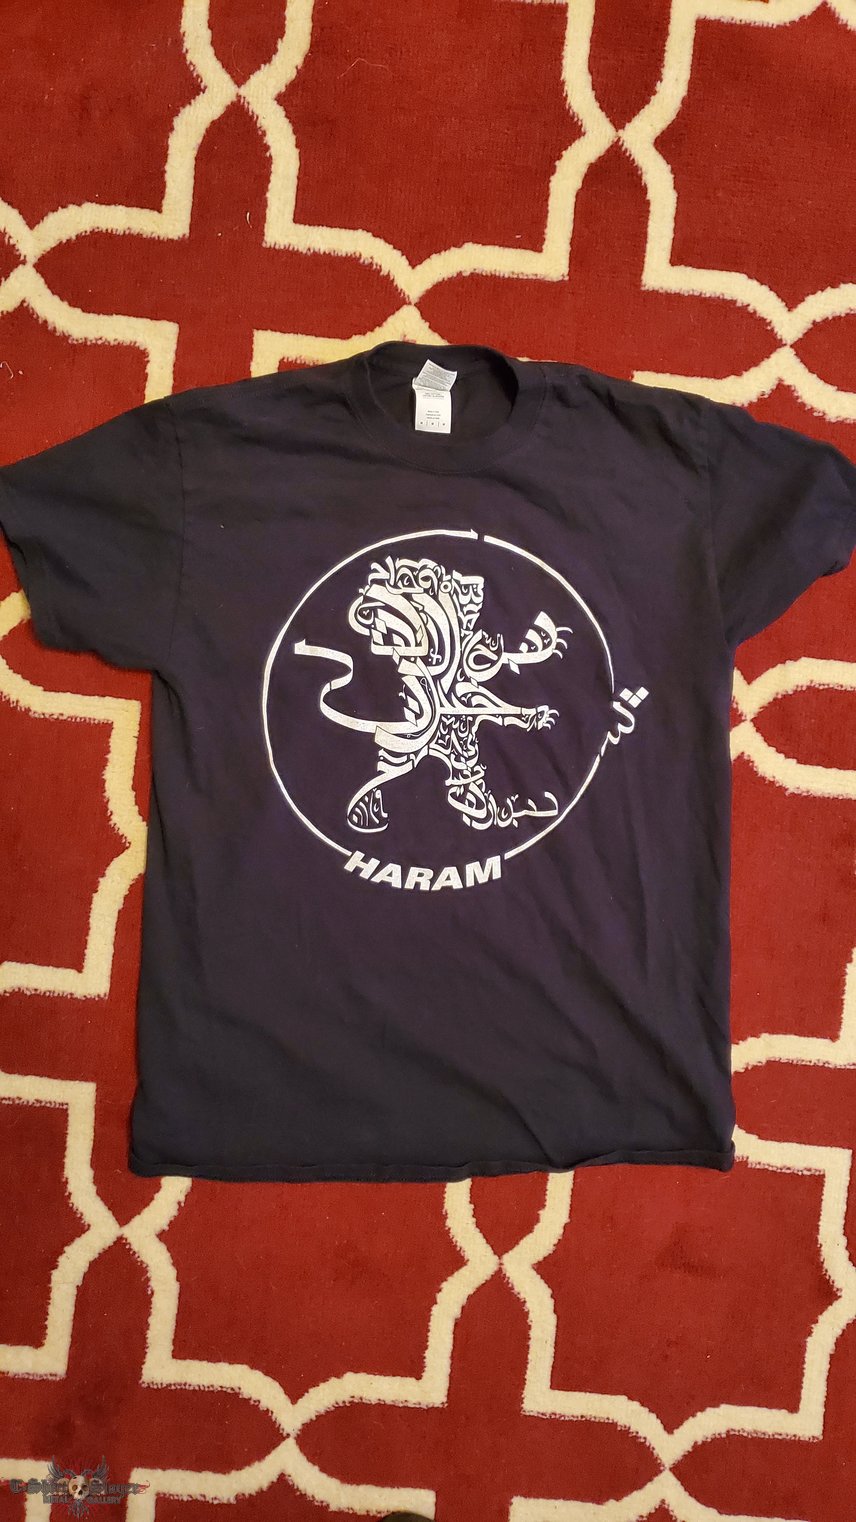 Haram Lion shirt